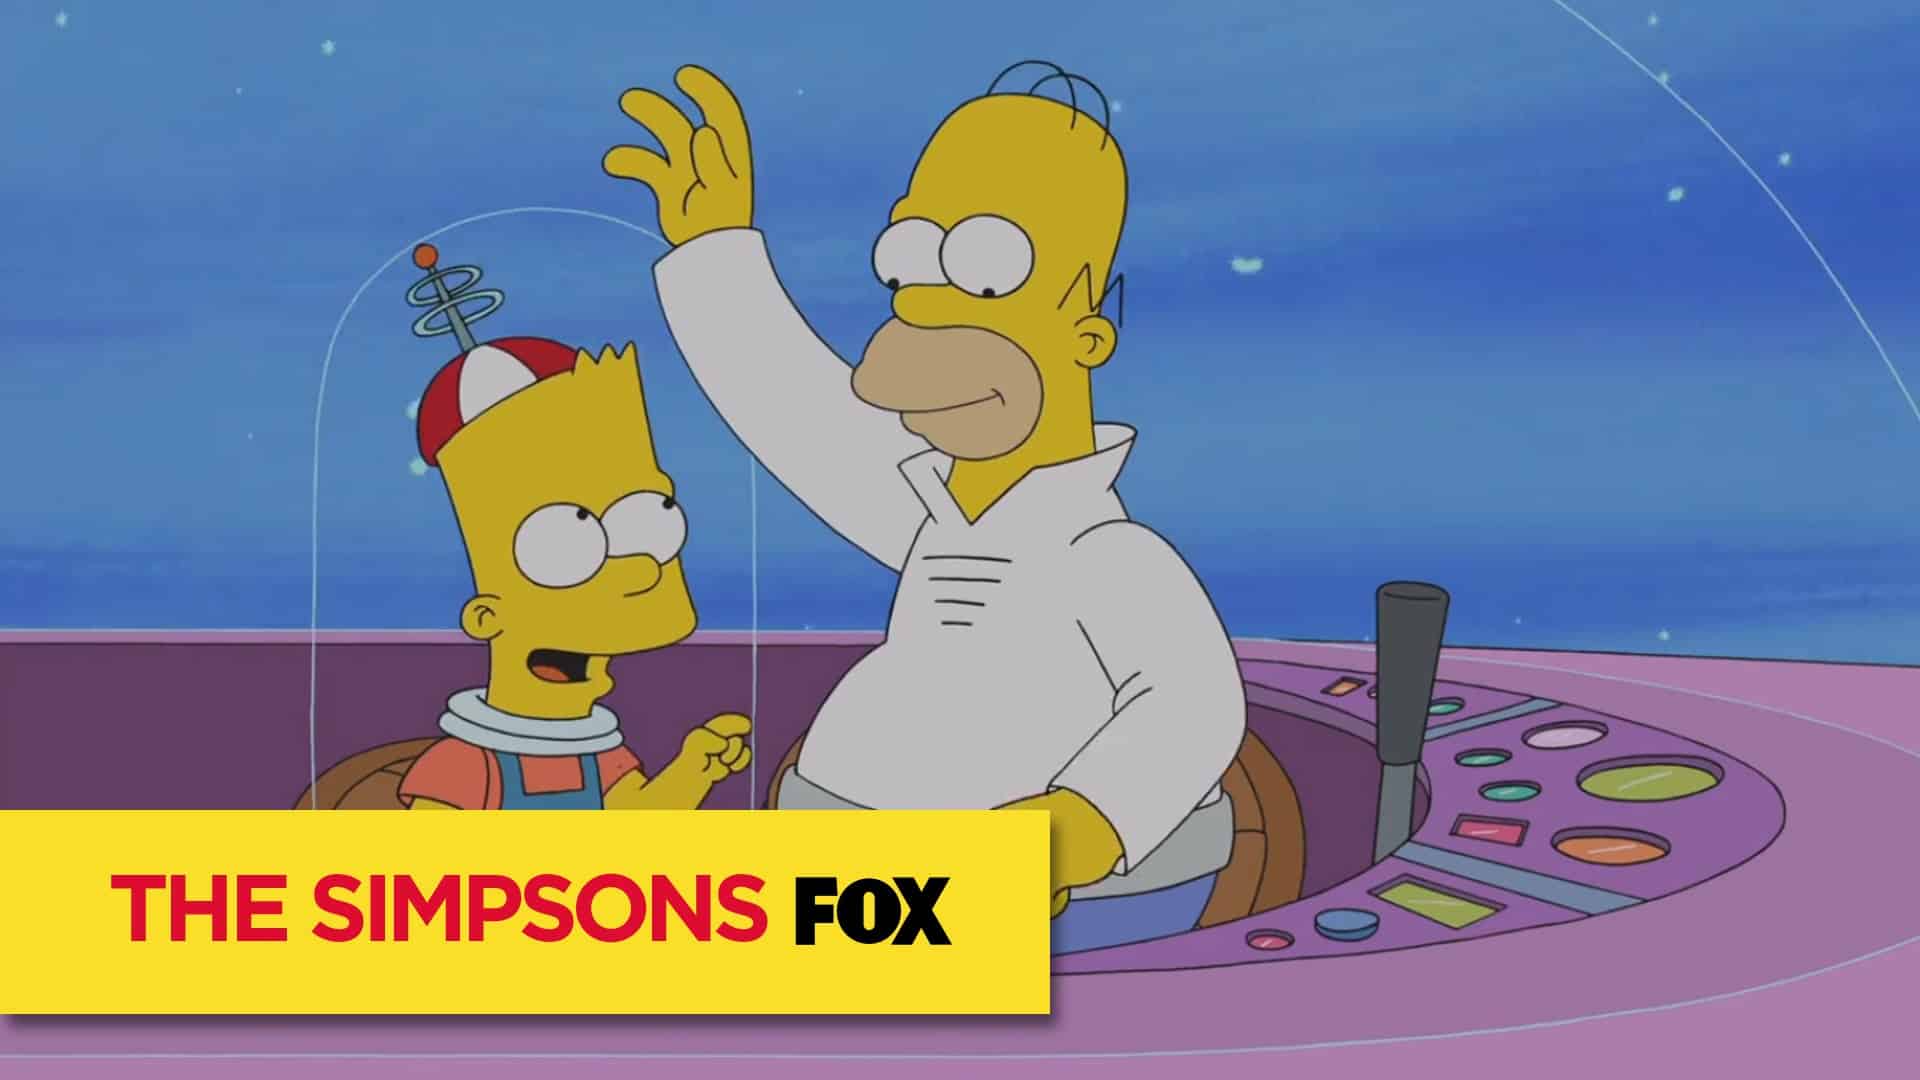 Simpsons: de parodie van de Jetson